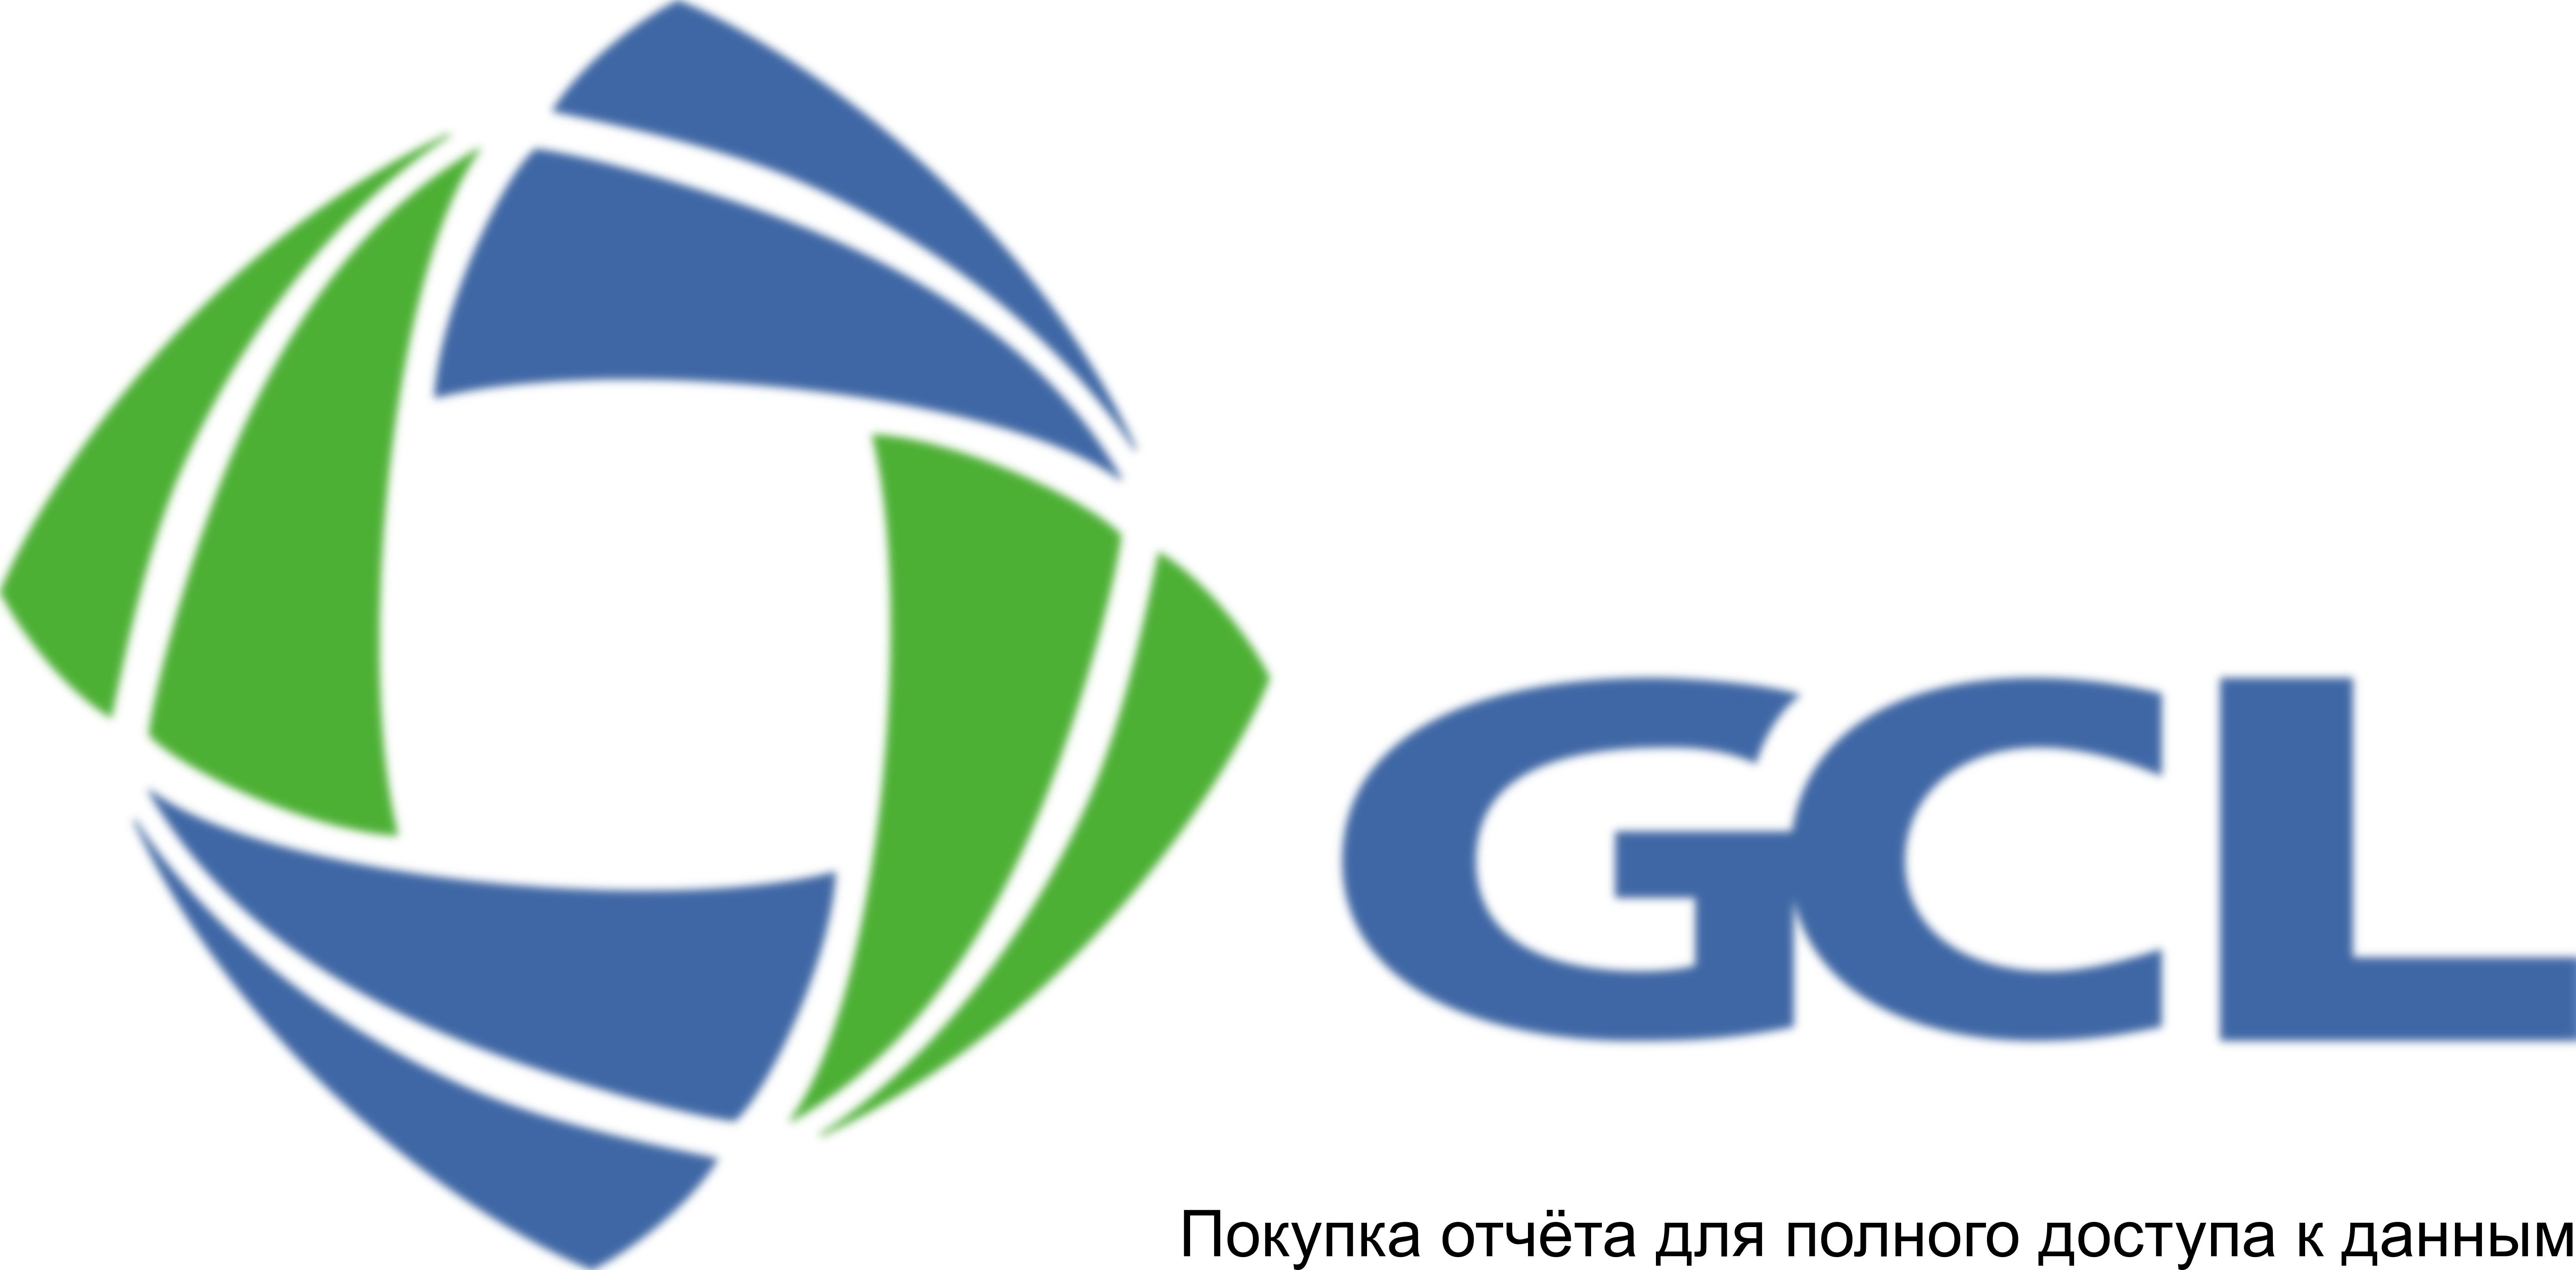 Таблица 6. Профиль компании GCL-Poly Energy